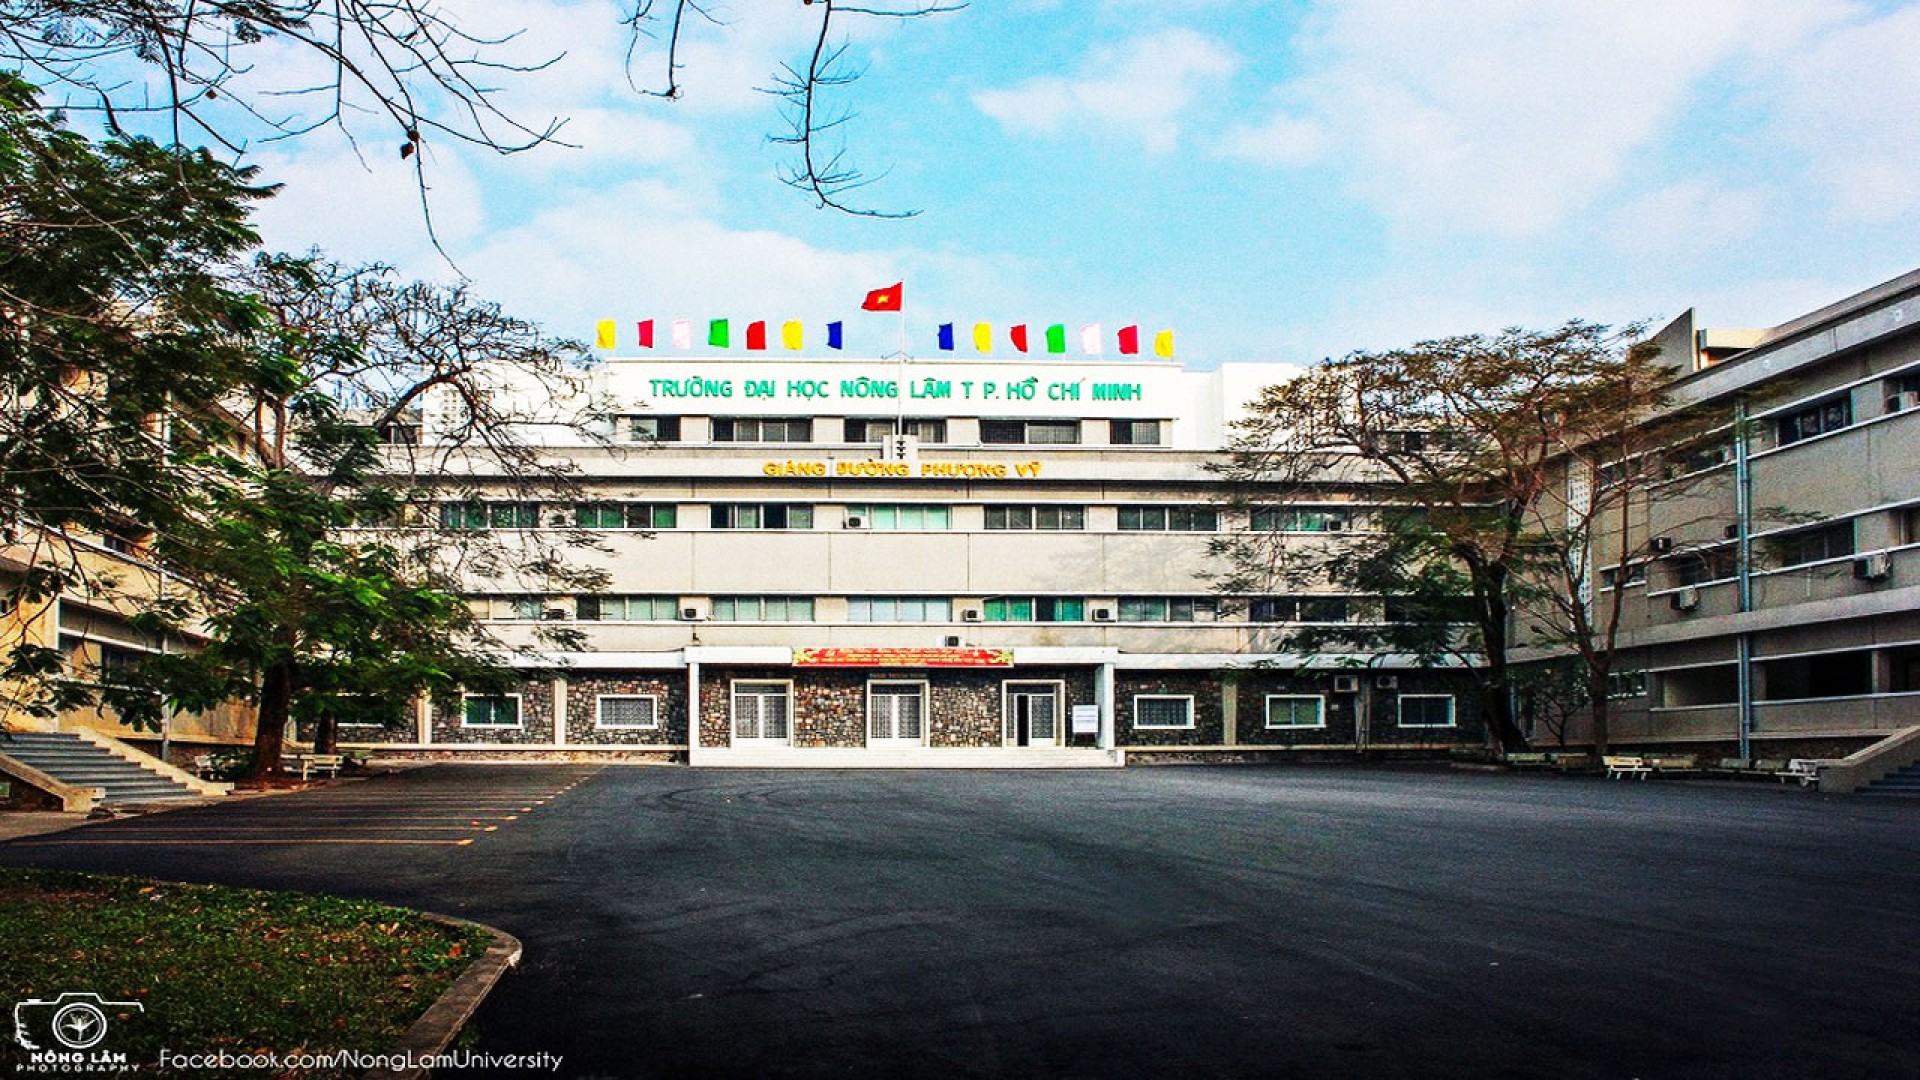 Đại học Nông Lâm TP. HCM: Ngôi trường ẩn mình trong khu rừng nhỏ